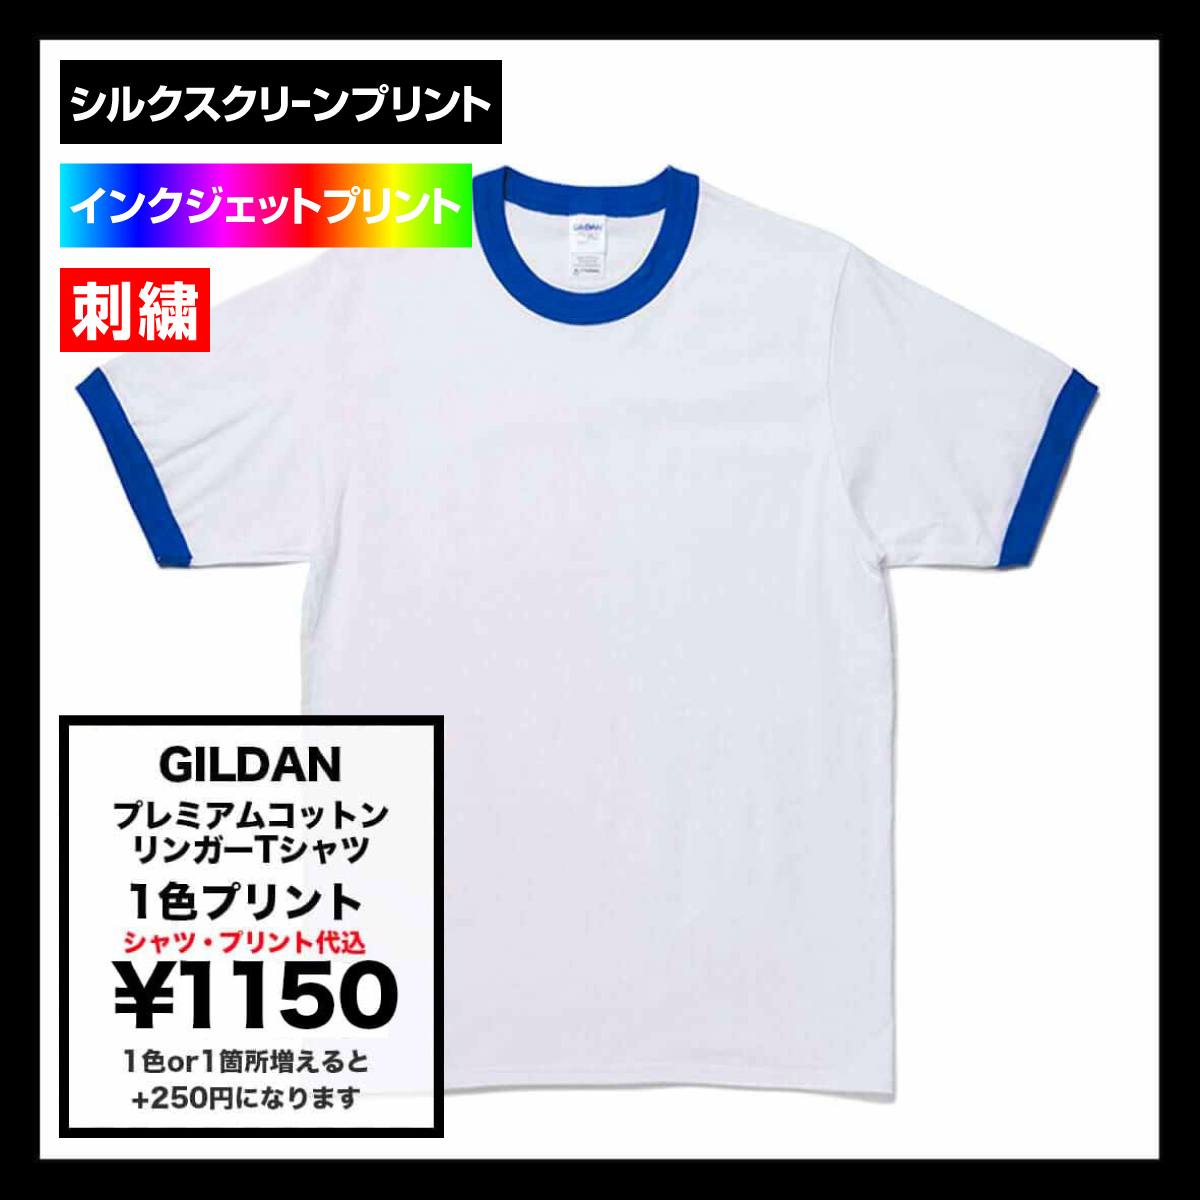 GILDAN ギルダン 5.3 oz ジャパンスペック リンガーTシャツ (品番GL76600)